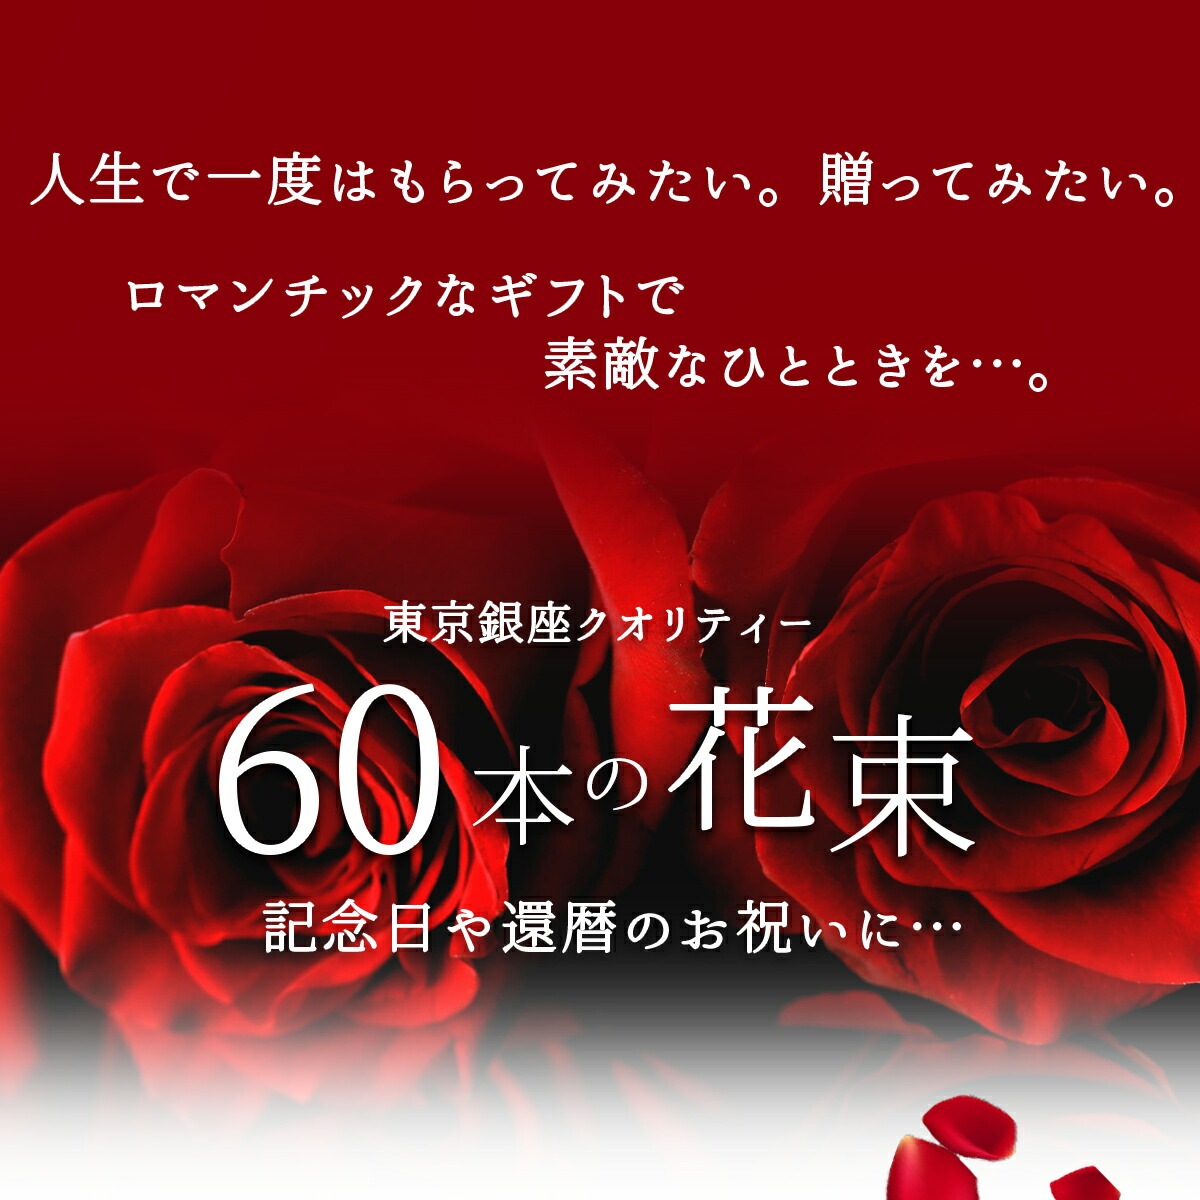 上質◎東京銀座クオリティ】 赤バラ60本の花束 還暦祝い 送料無料 あす